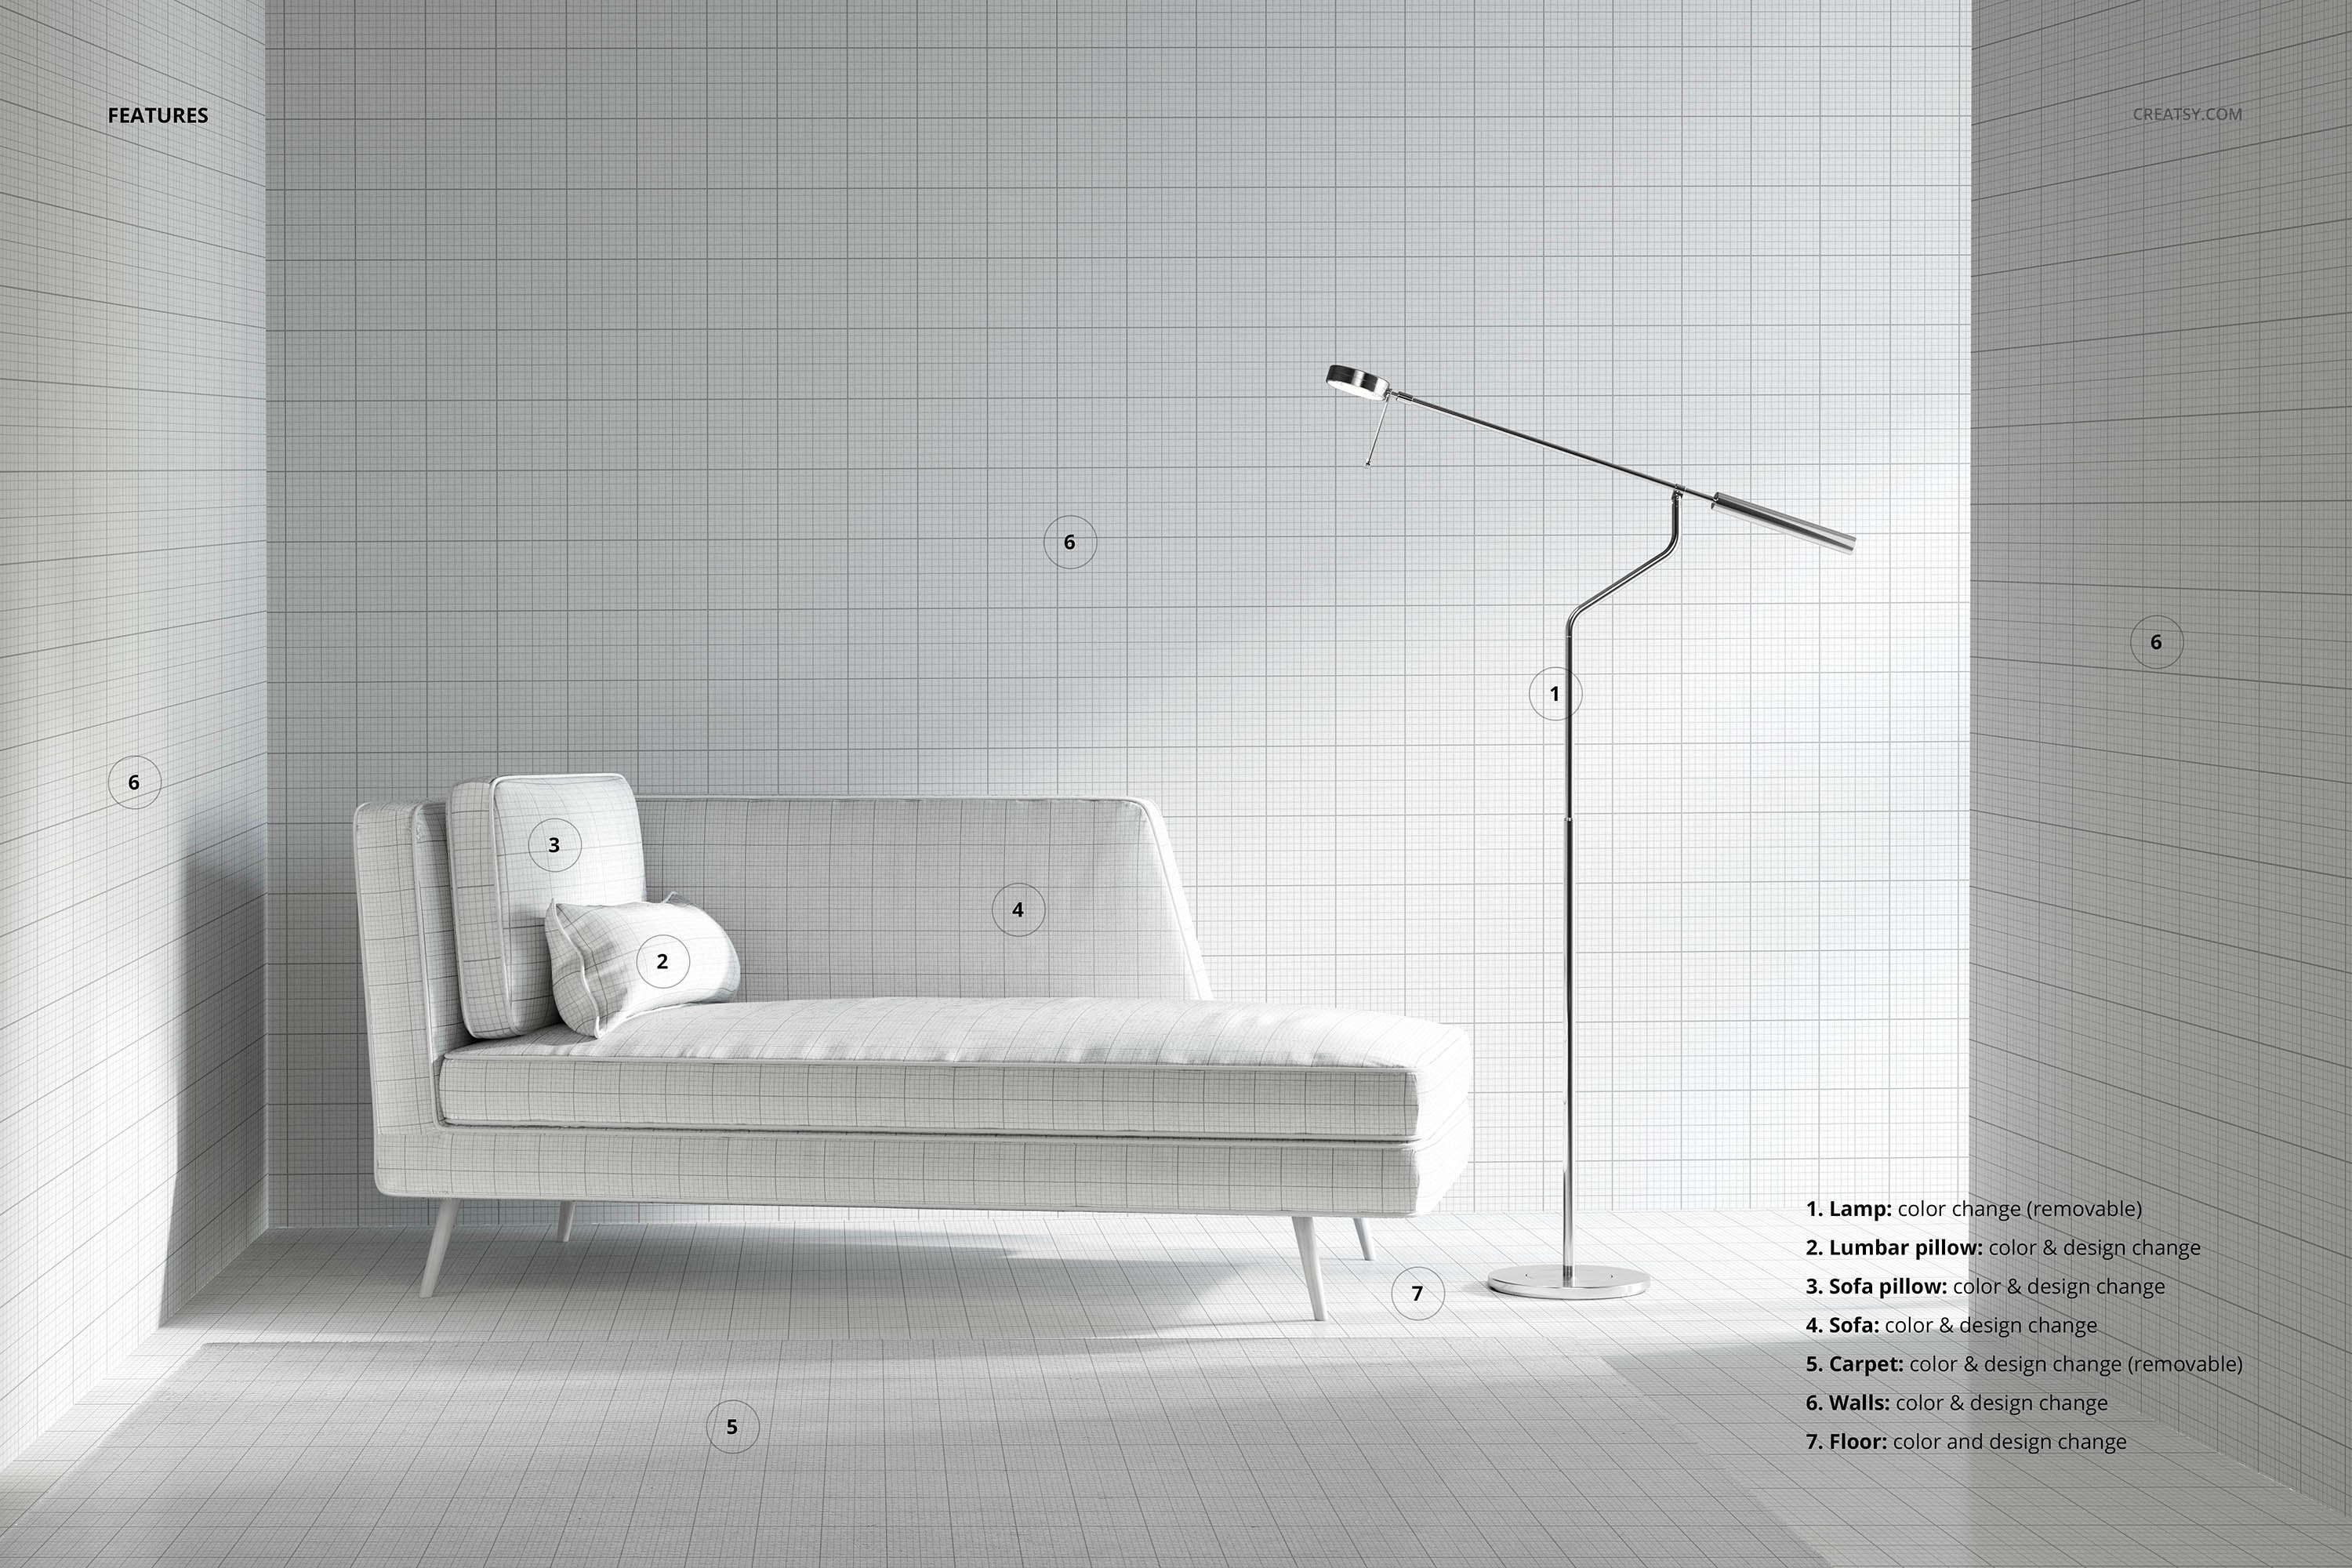 简约室内场景沙发壁纸设计展示样机素材interiorscenemockup